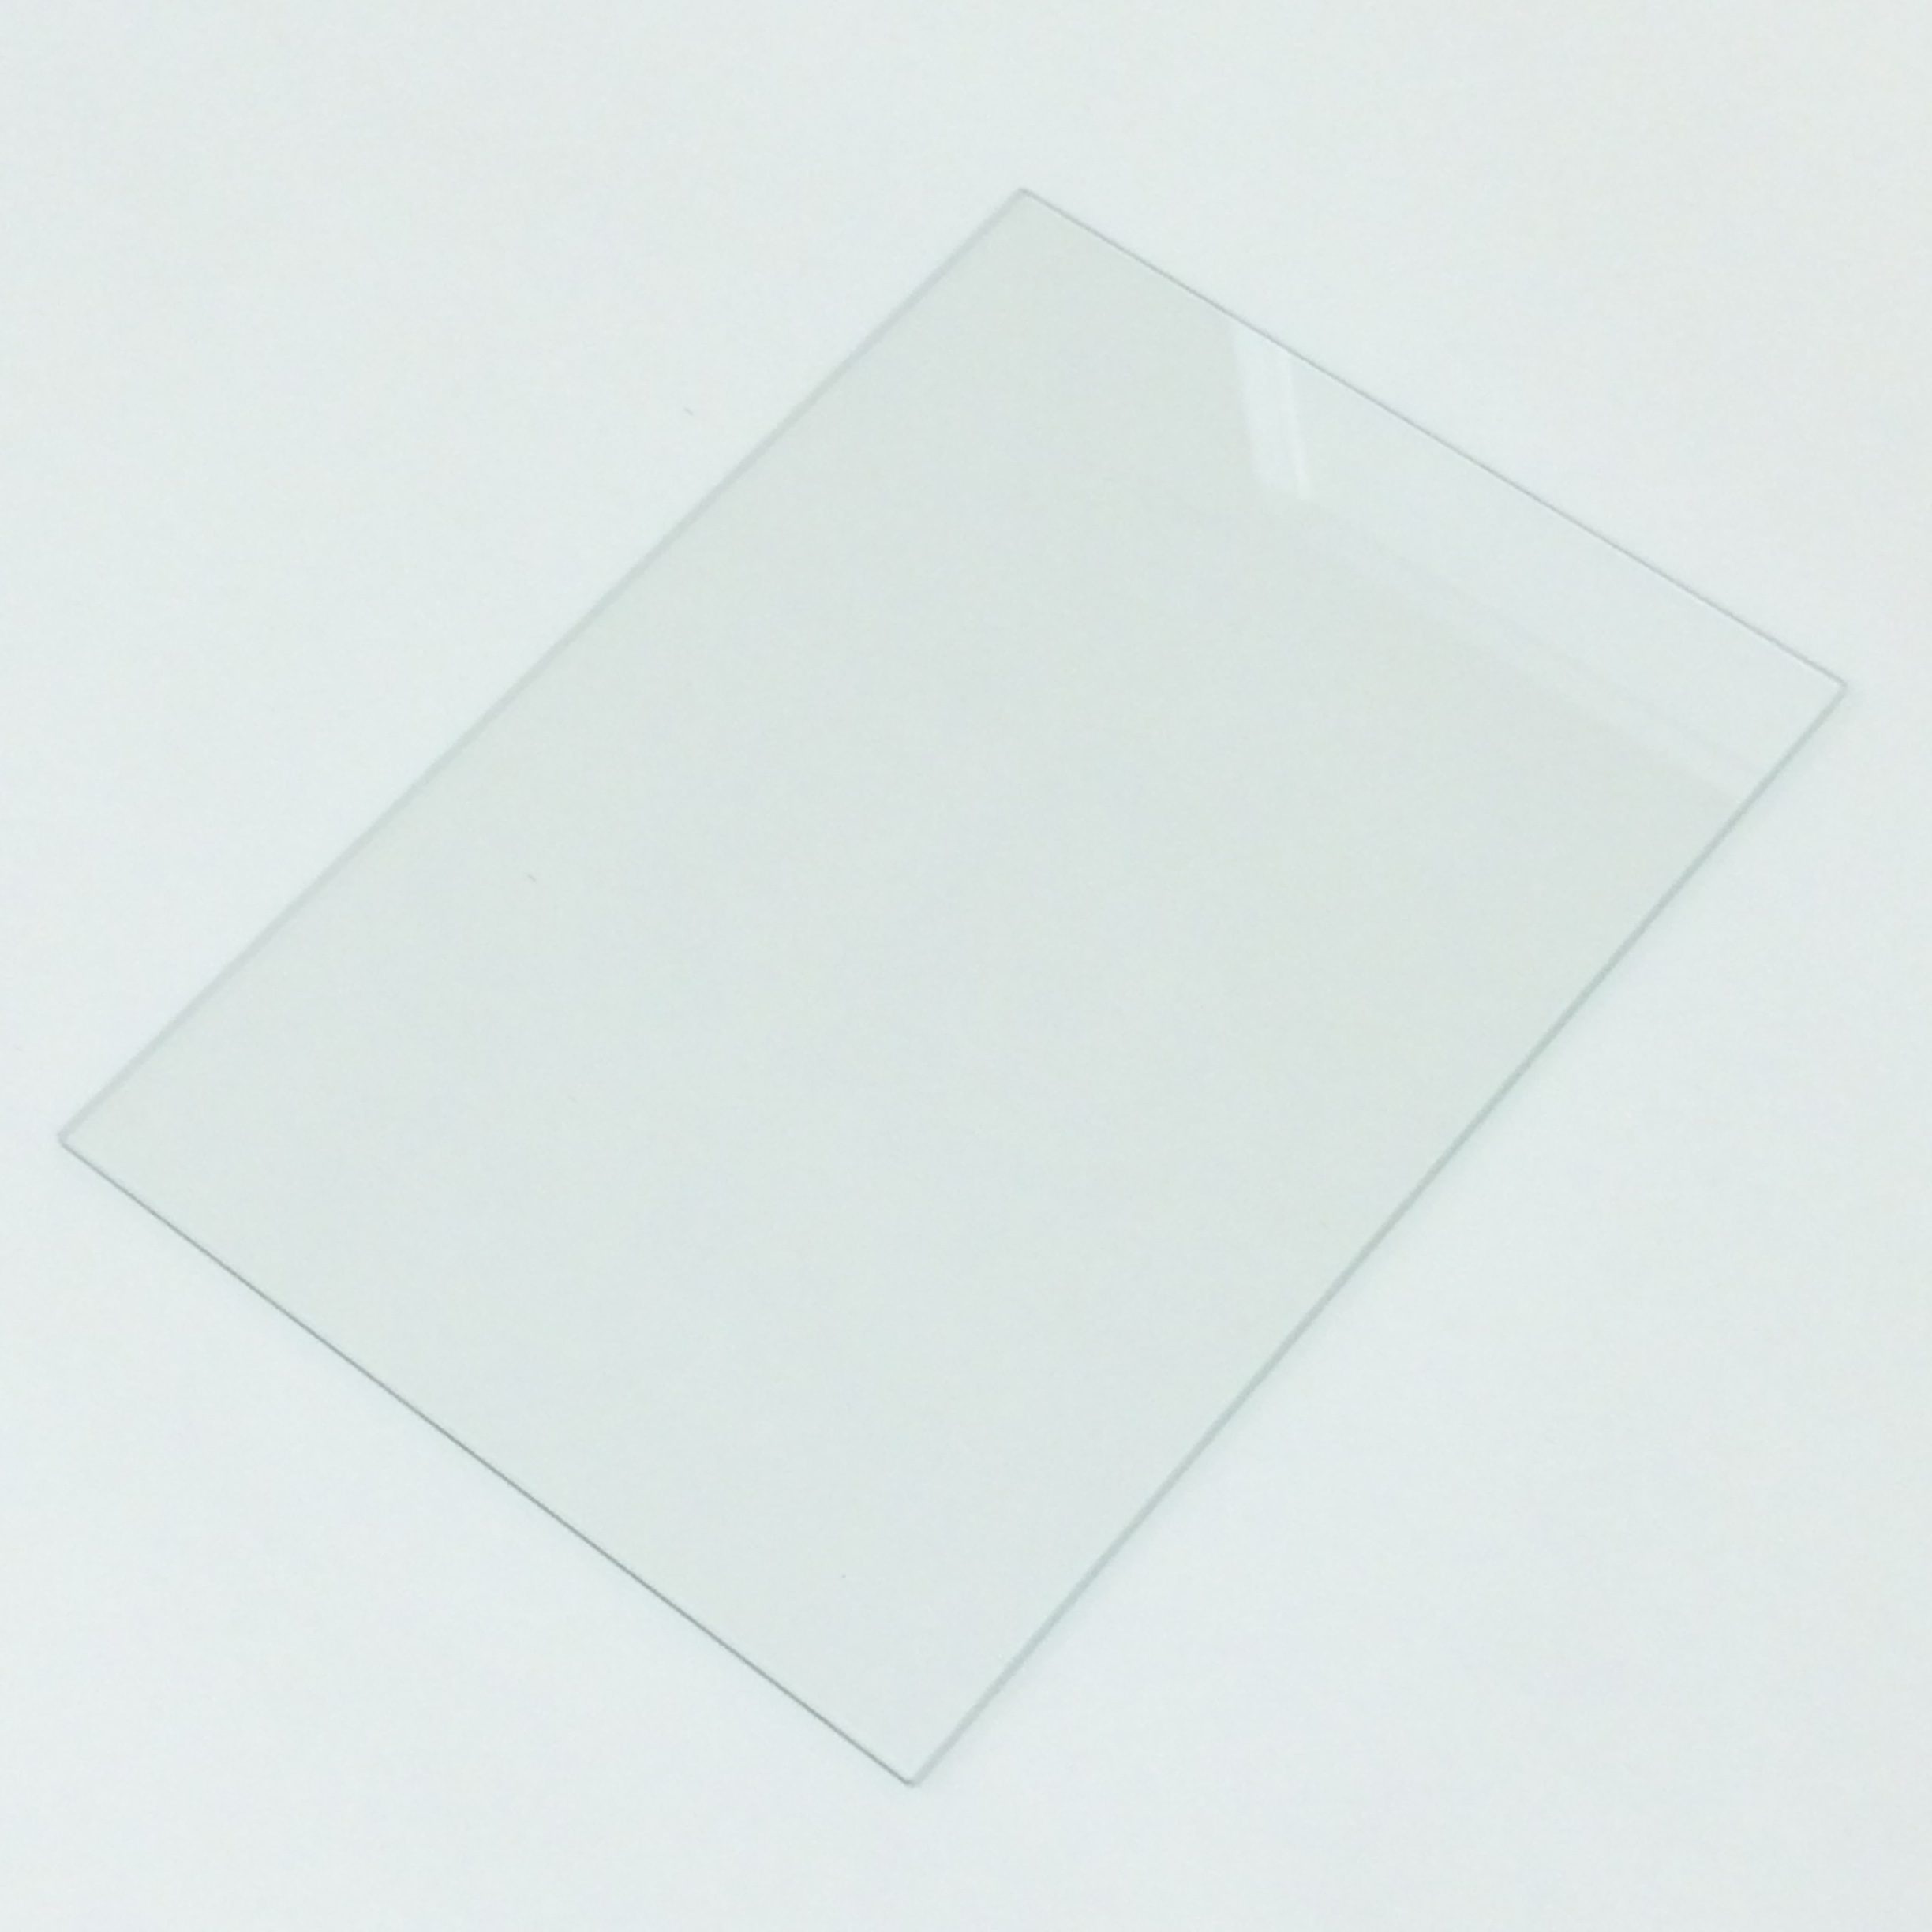 実験用耐熱ガラス「並硝子角板200×150×t2」 - 理化学ガラスLab